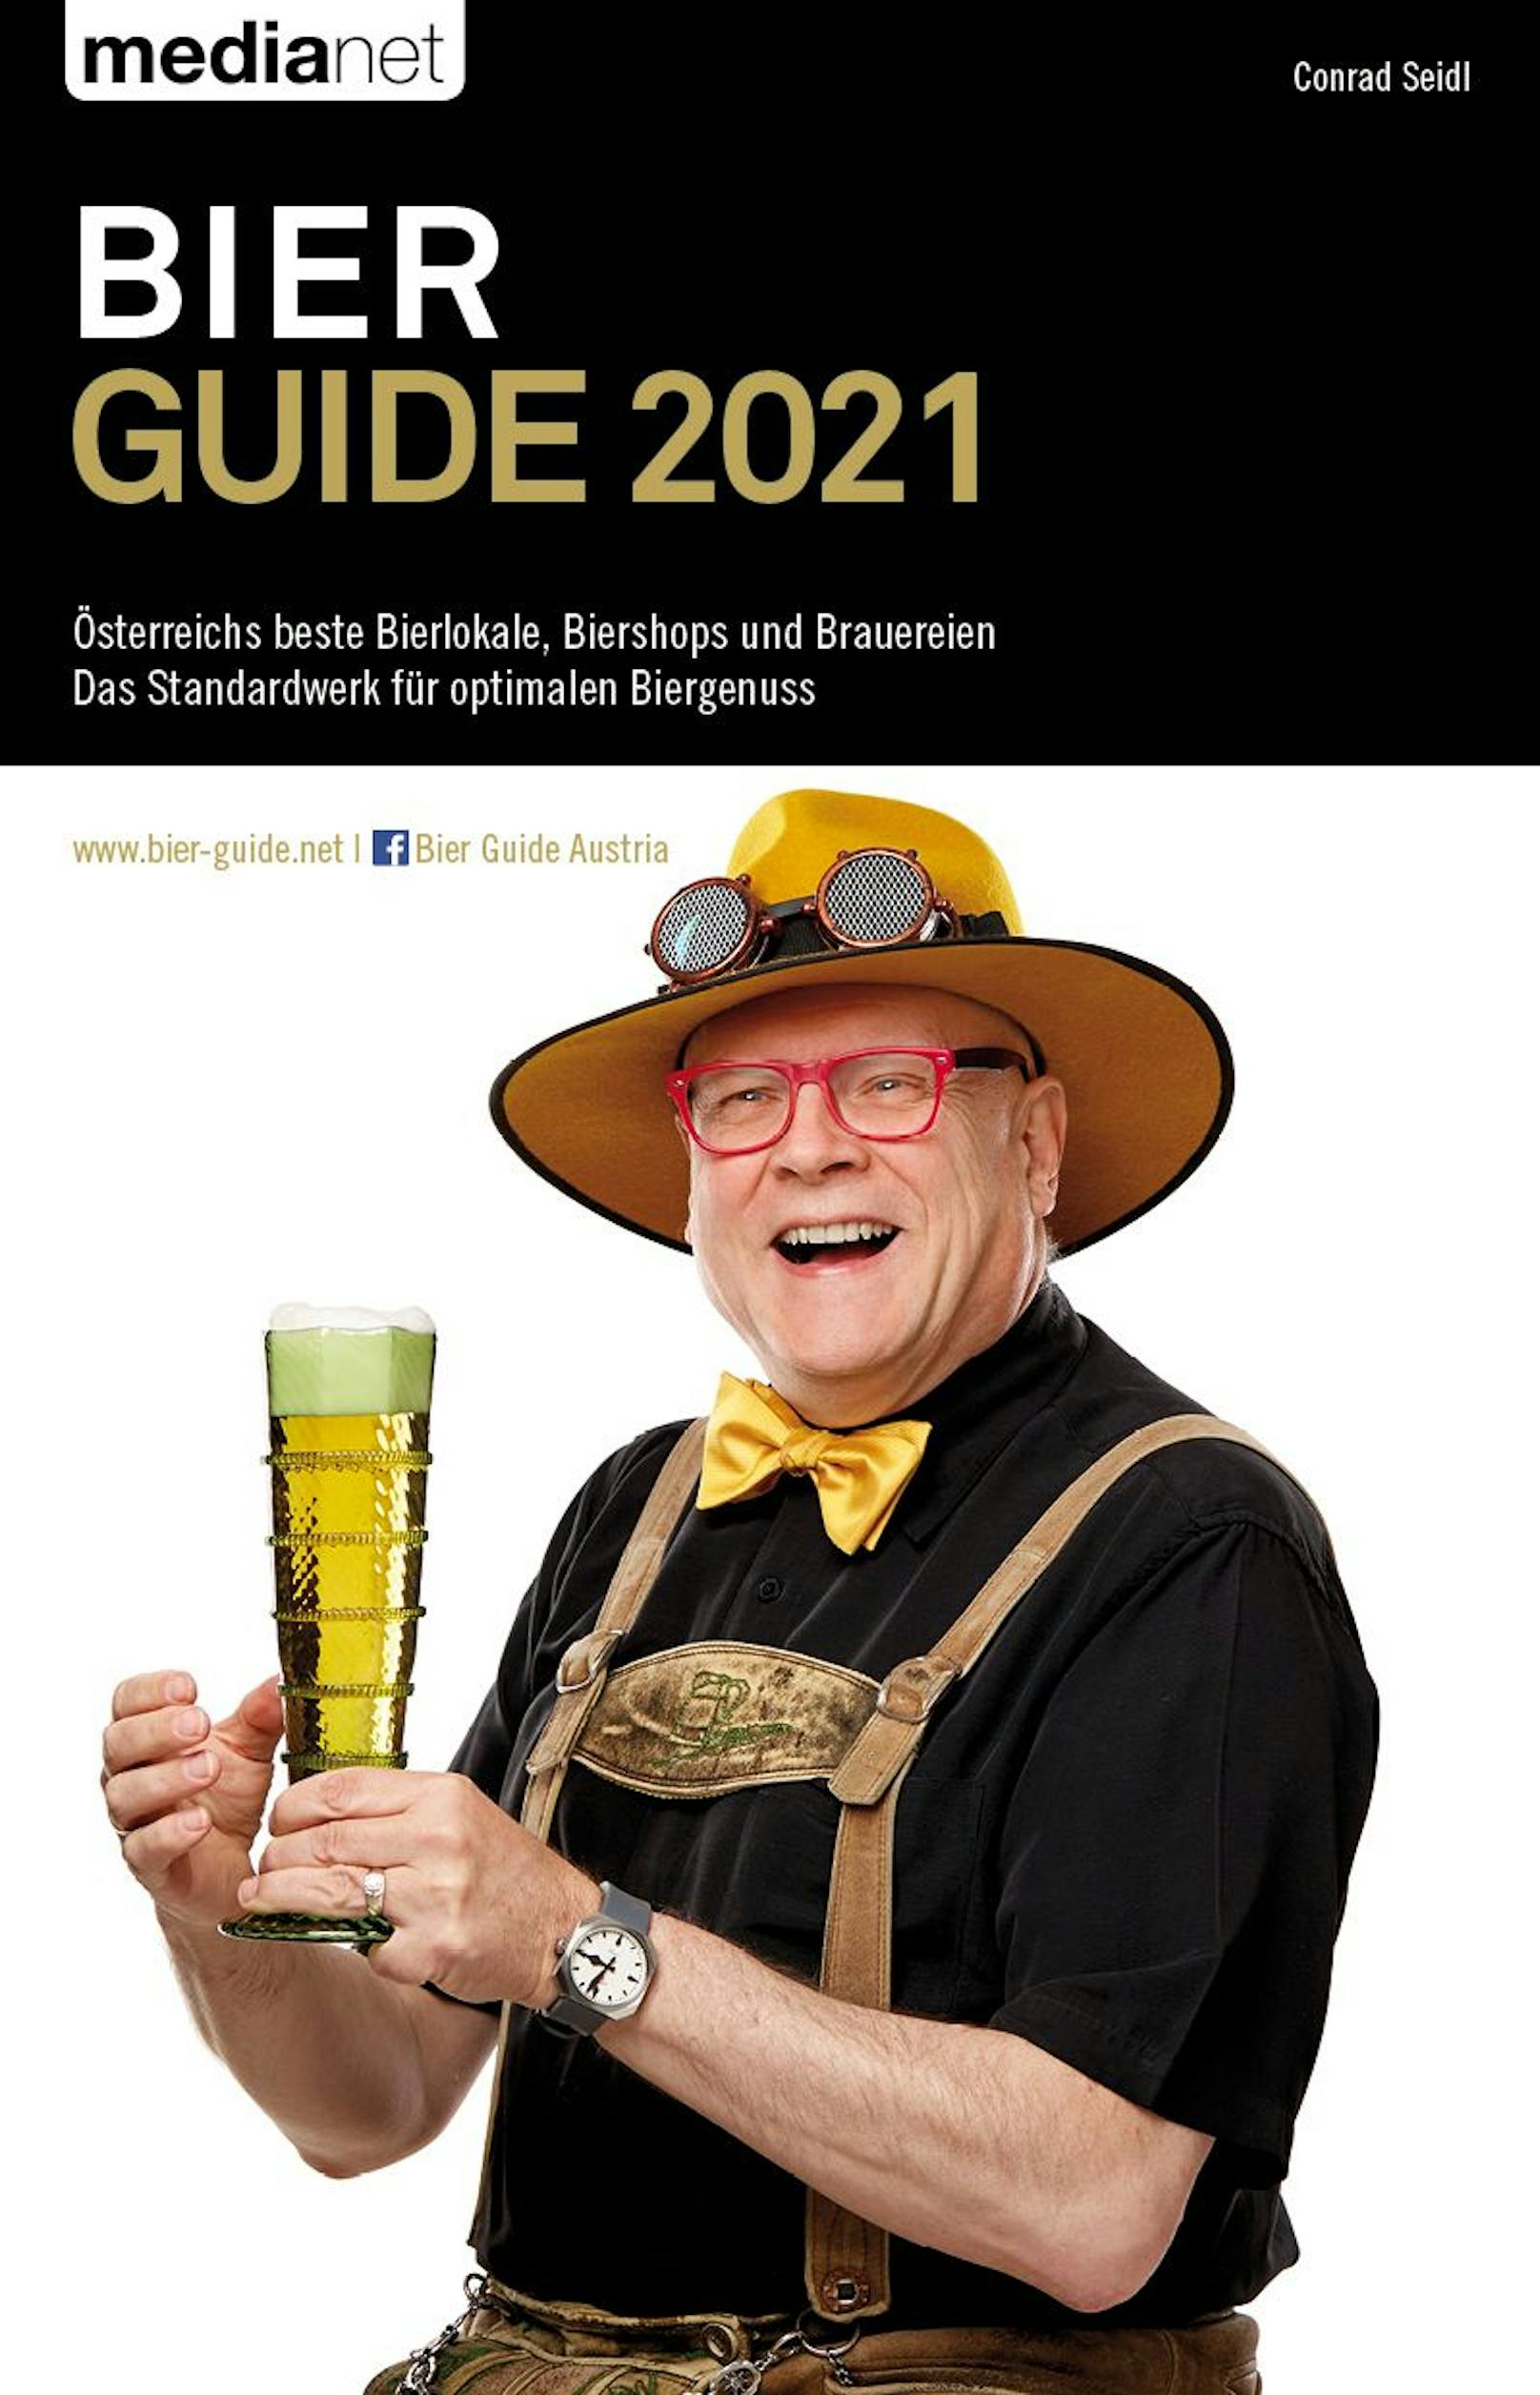 Bier Guide 2021:&nbsp;Der Bierpapst dokumentiert mehr Biere, bessere Bierlokale und höhere Bierkultur in Österreich.